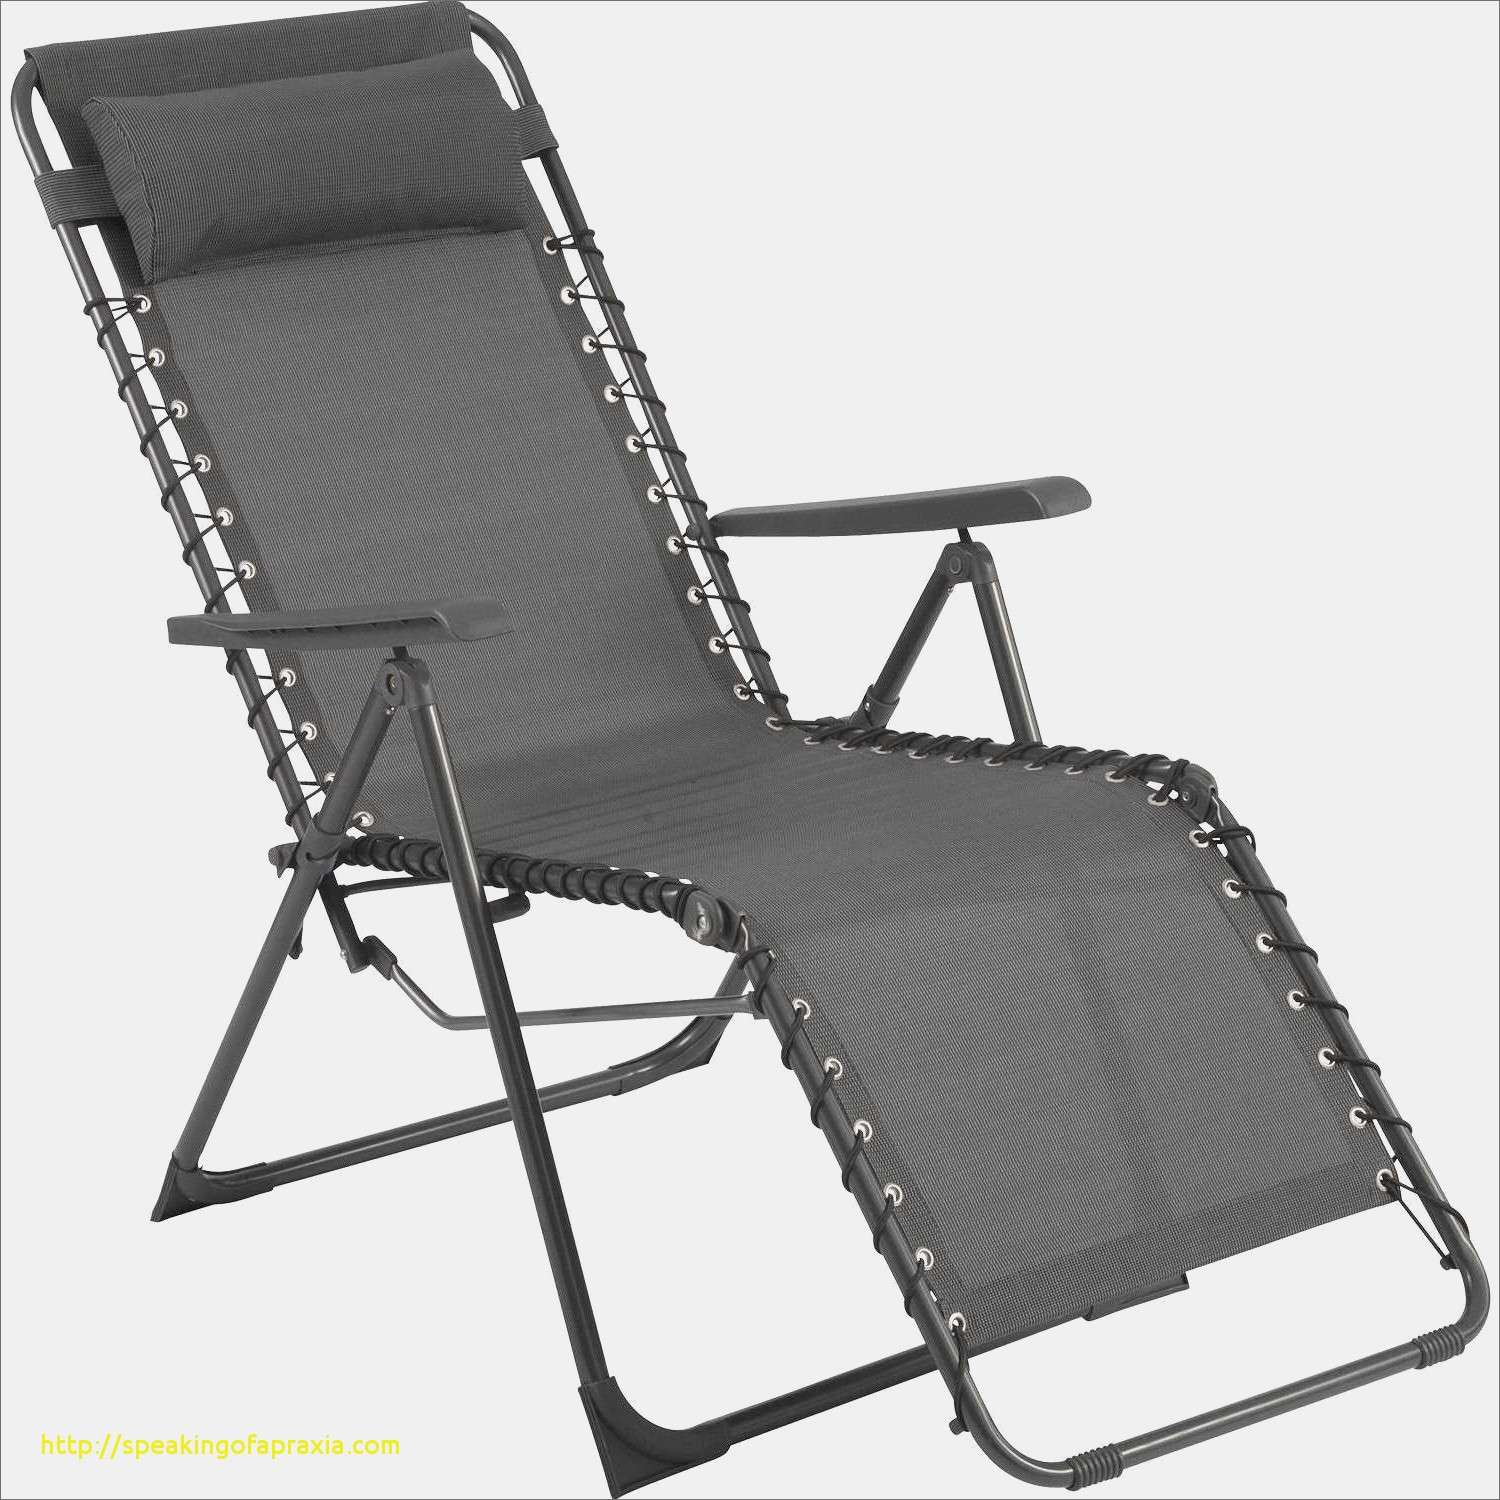 chaise pliante decathlon fauteuil de camping pliant clubs withdecathlon chaise pliante decathlon fauteuil de camping pliant clubs regard to